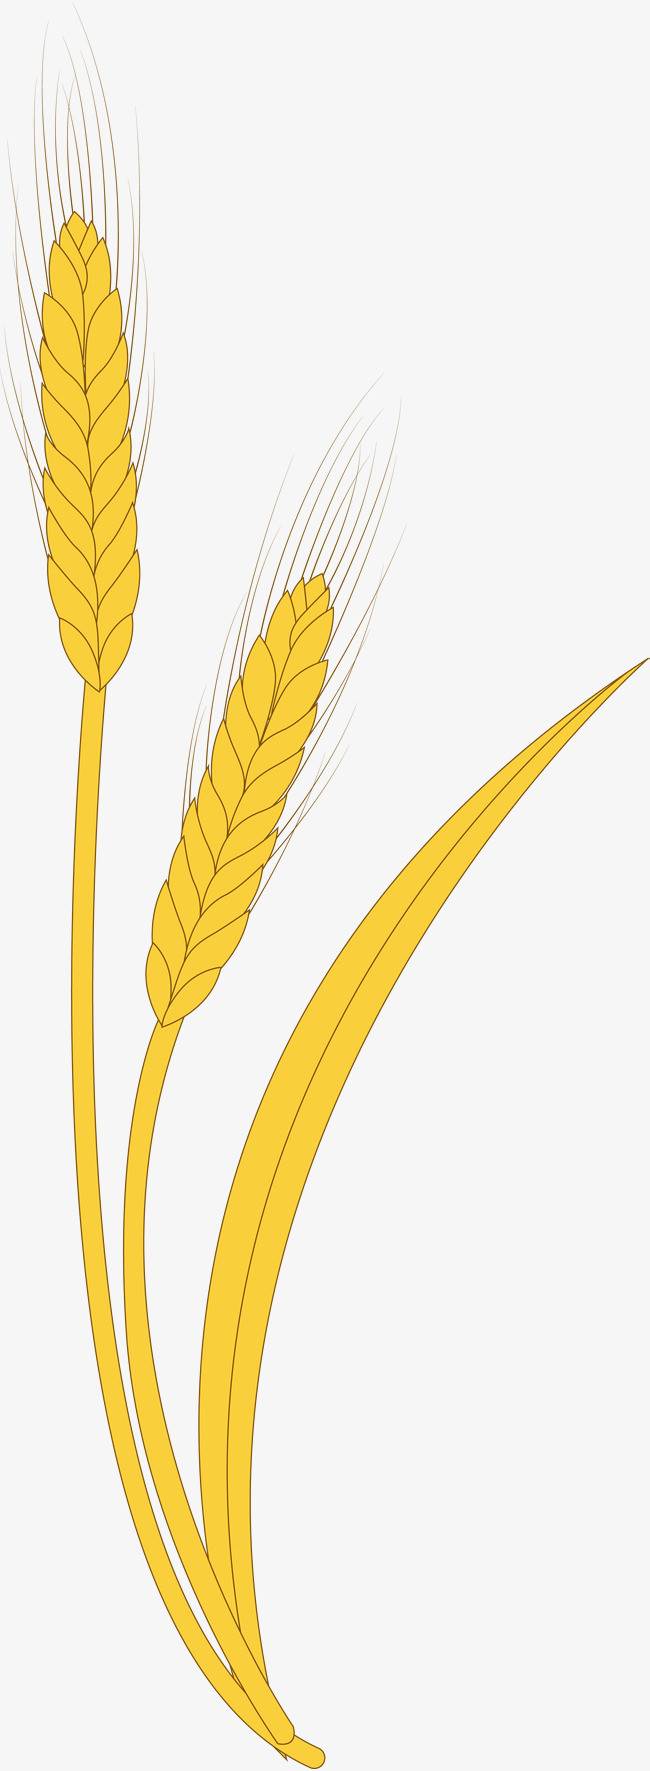 小麦成熟的图片简笔画图片